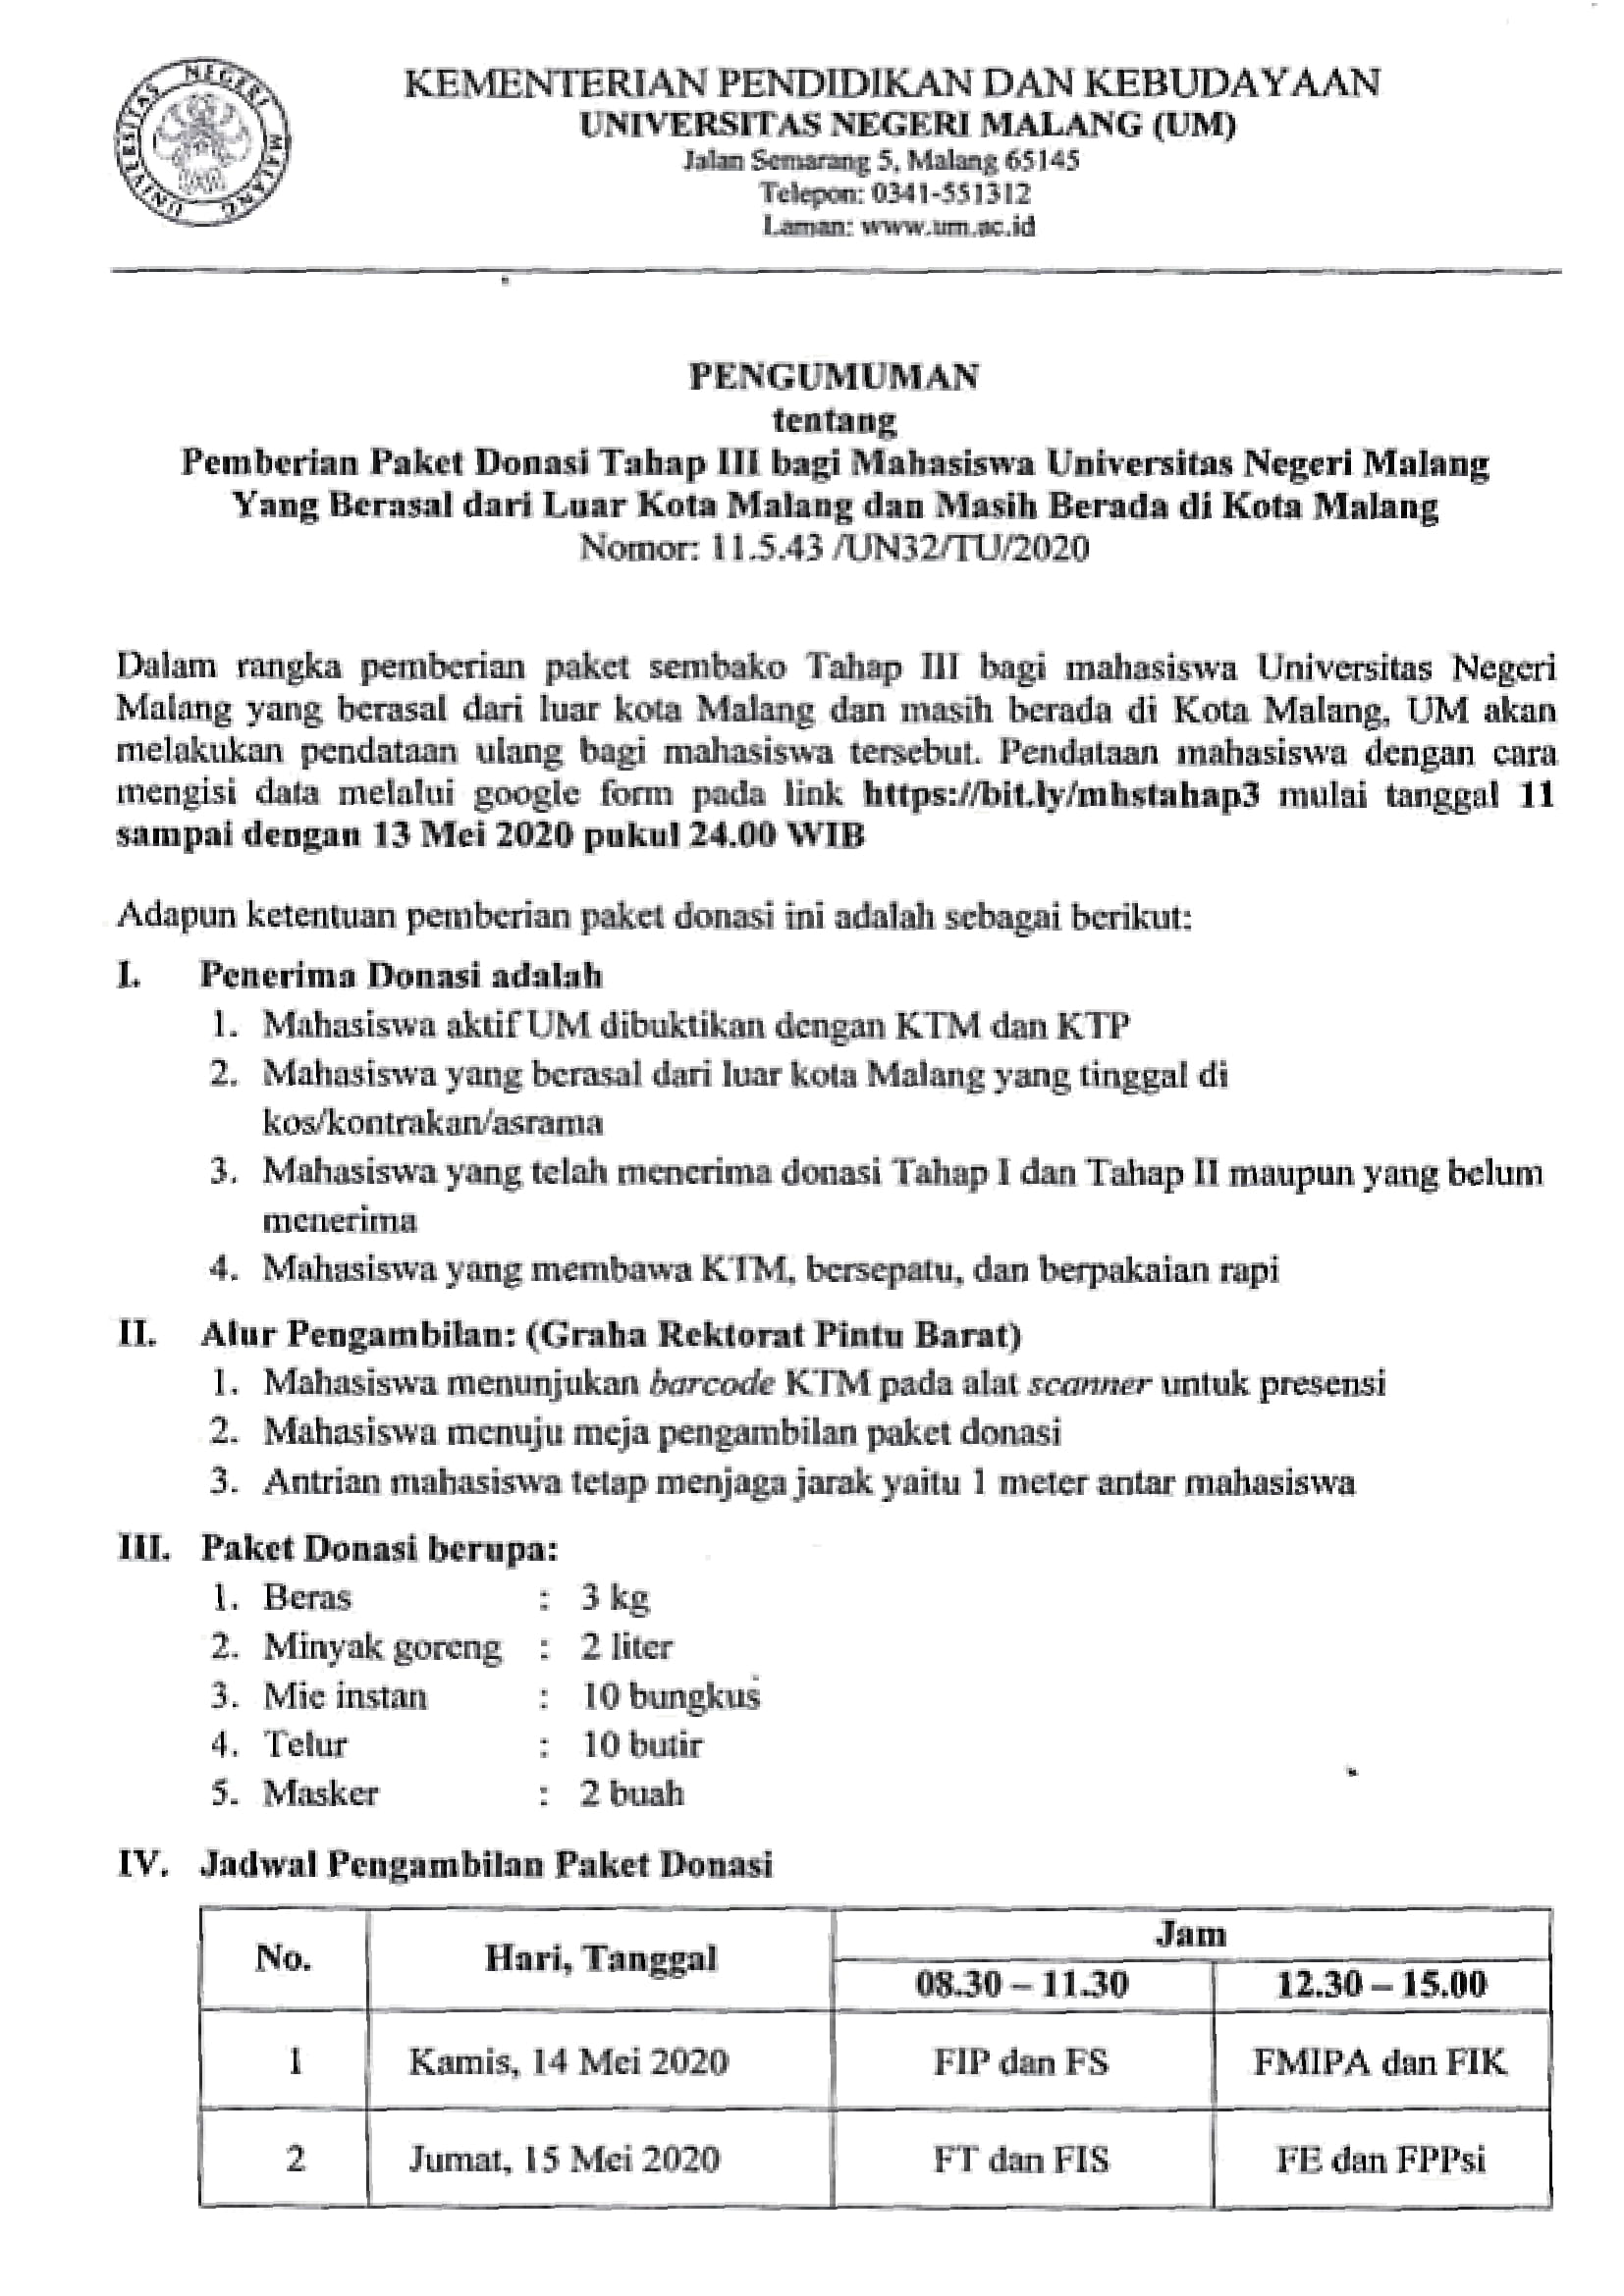 Pemberian Paket Donasi Tahap III bagi Mahasiswa Universitas Negeri Malang yang Berasal dari Luar Kota Malang dan Masih Berada di Kota Malang